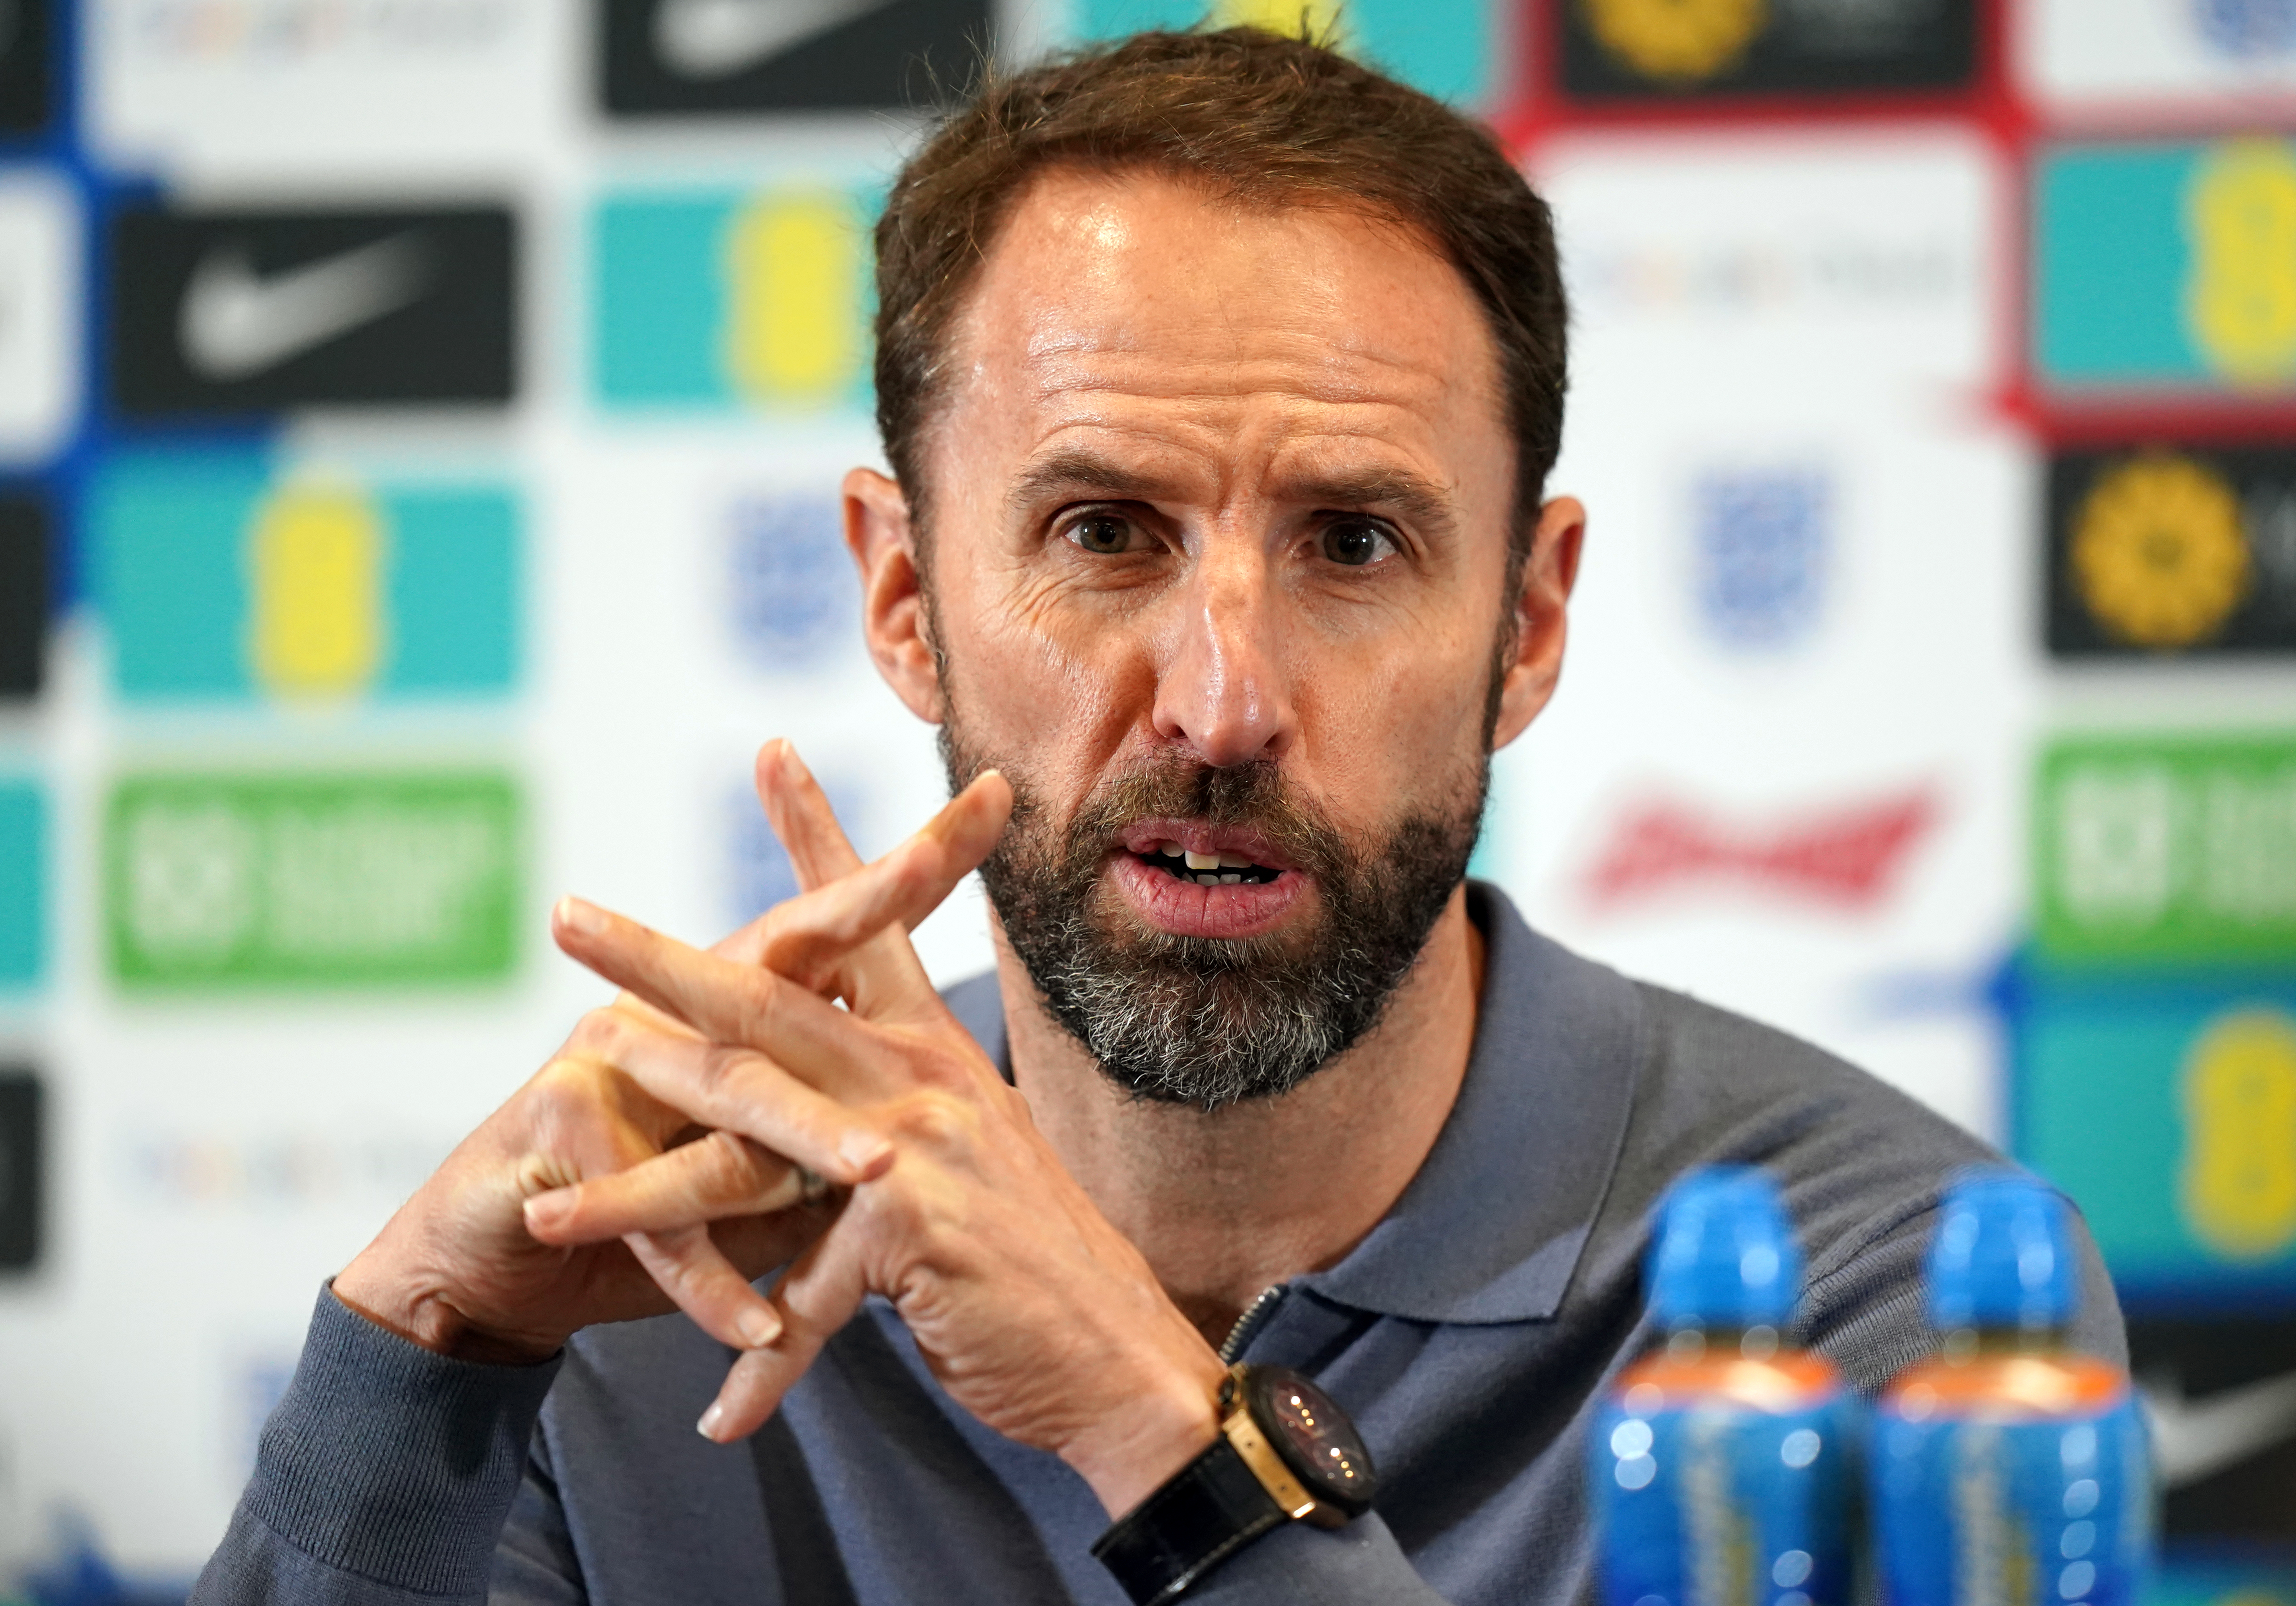 England manager Gareth Southgate said hosting Euro 2028 represented